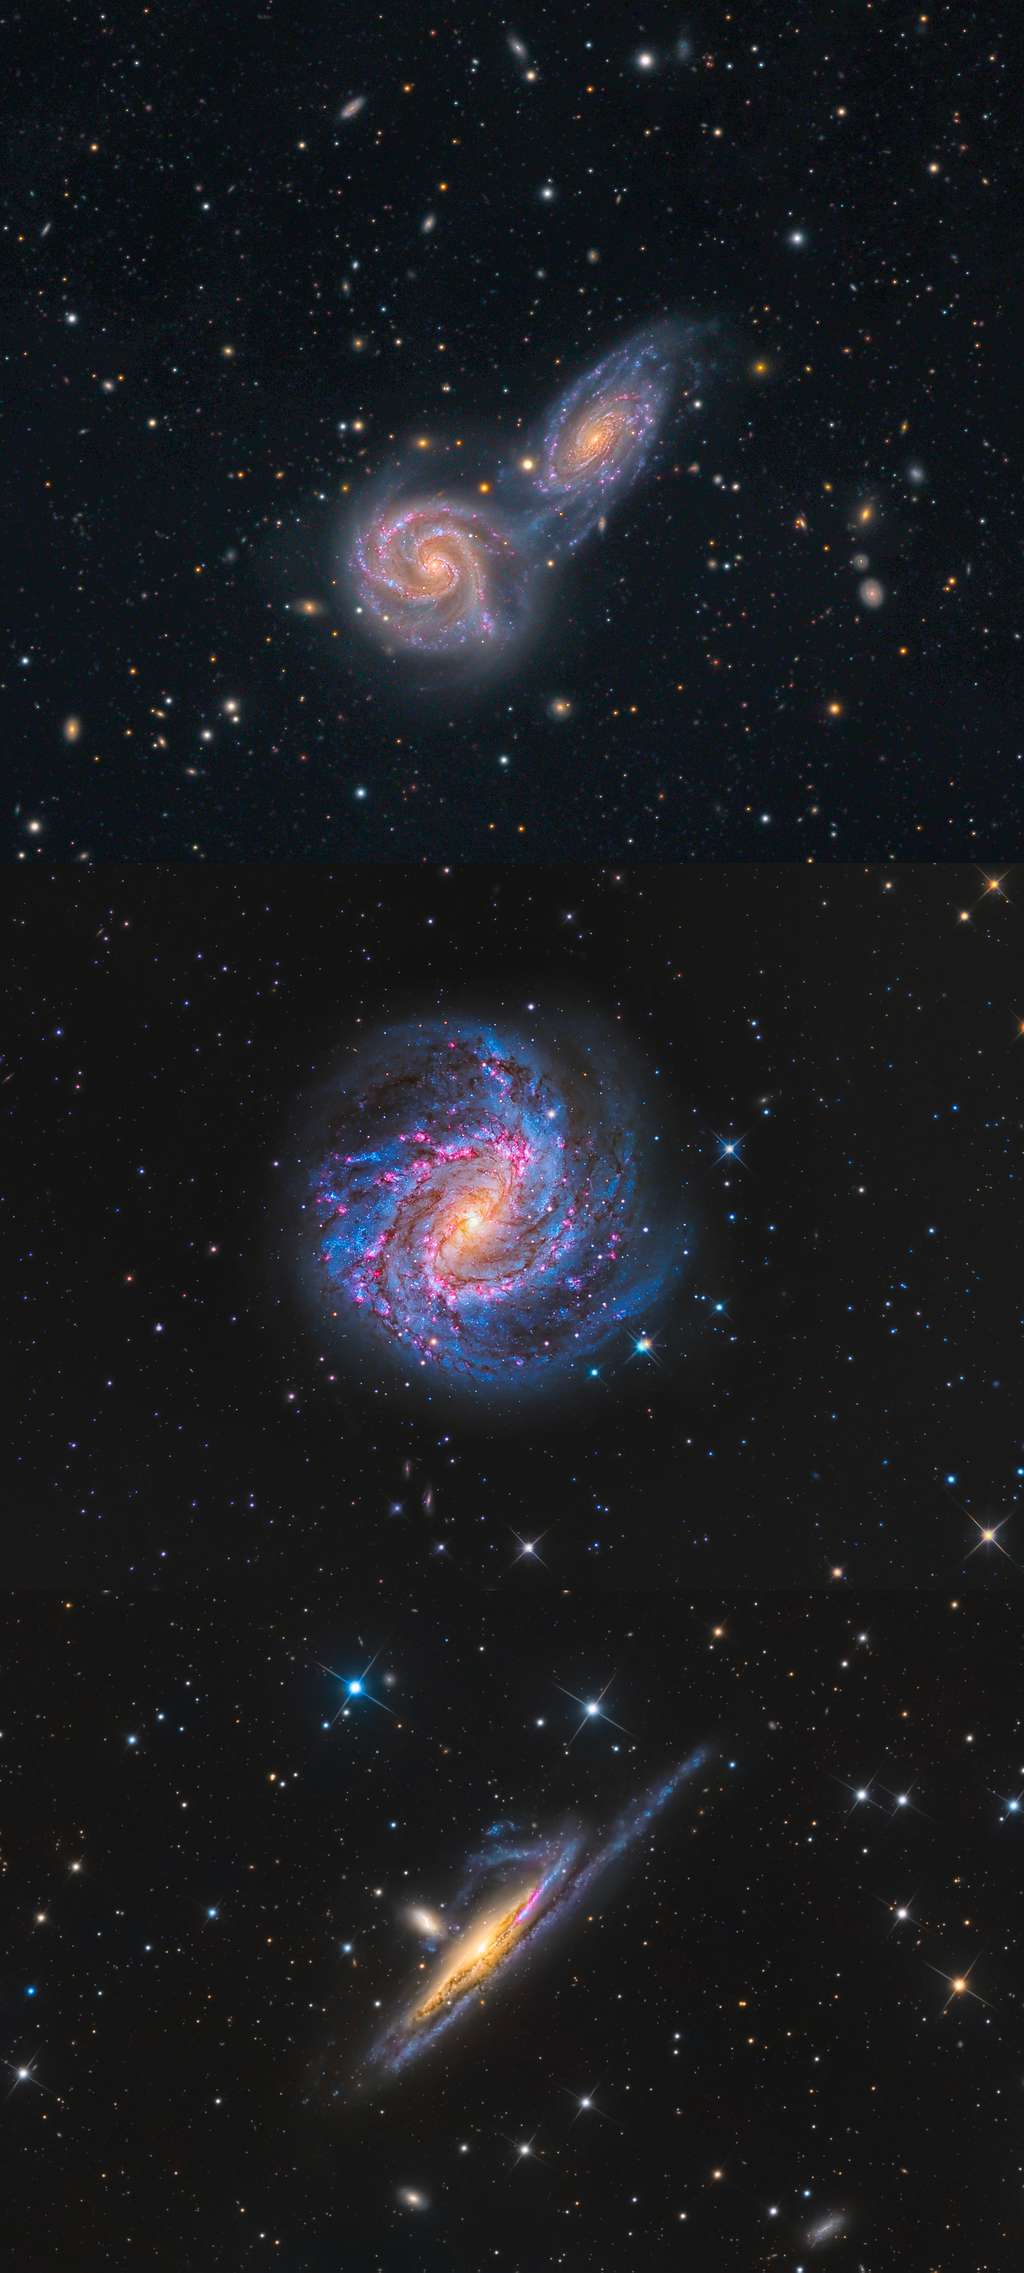 Ces trois images de la catégorie « galaxies » montrent de bas en haut les galaxies NGC 5426 and NGC 5427, la galaxie Pinwheel (aussi connue sous le nom de M101) et une paire de galaxies en interaction dans la constellation australe de l'Eridanus (NGC 1532).<br>Ces trois images ont respectivement été prises par Mark Hanson et Mike Selby (El Sauce Observatory, Río Hurtado, Coquimbo Region, Chilie), Peter Ward (Barden Ridge, New South Wales, Australie) et Terry Robison (Carrapooee, Victoria, Australie).